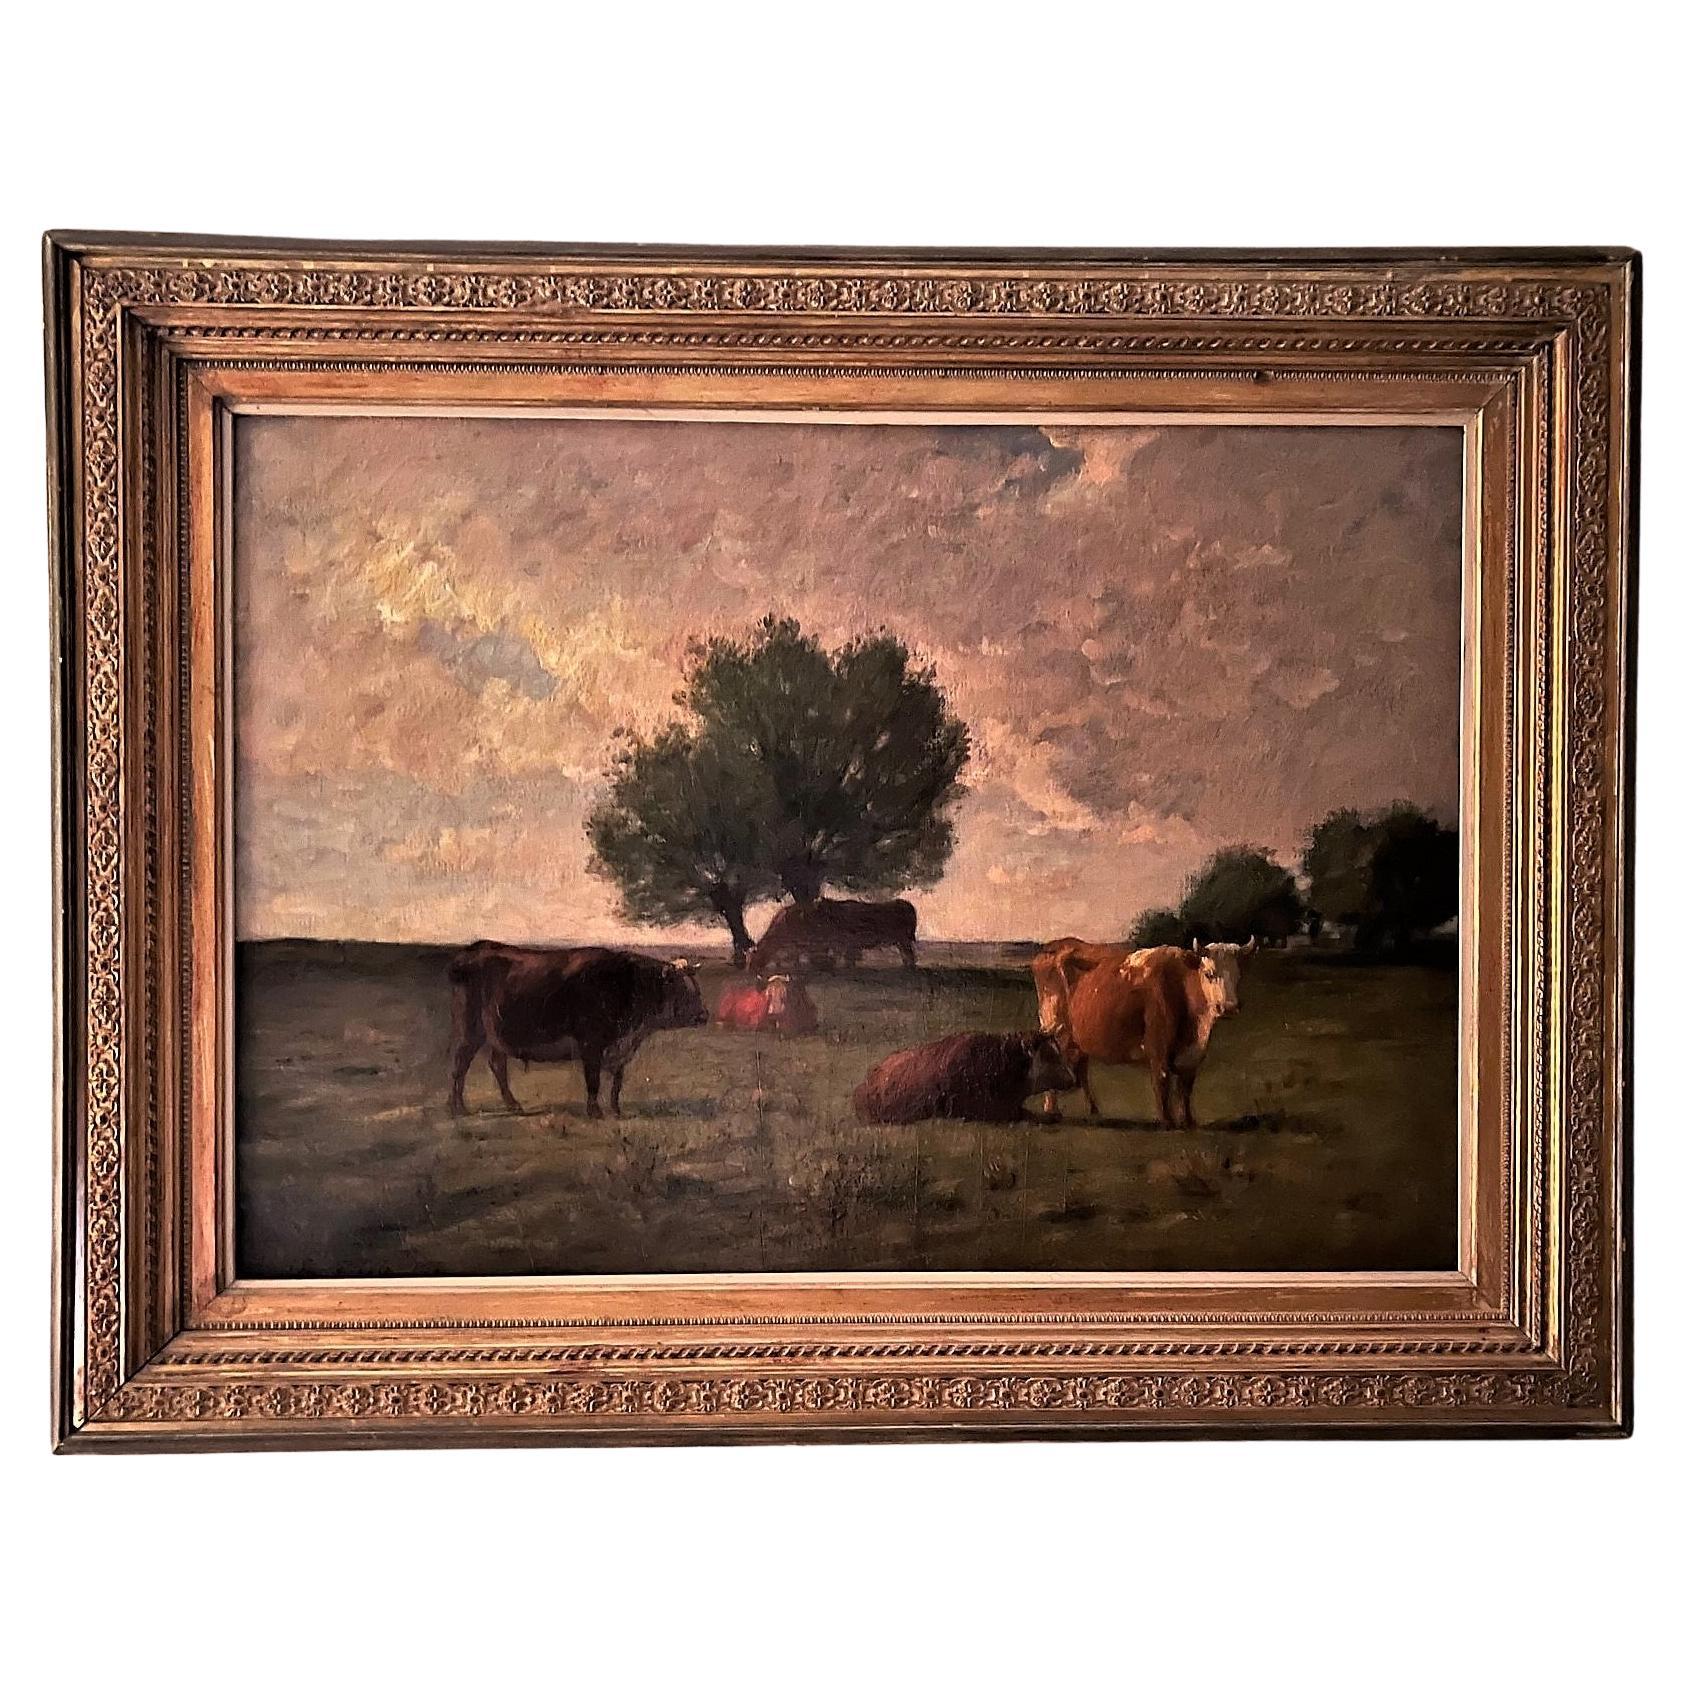 Les vaches qui brouillent, 1878, huile sur toile, Joseph Foxcroft Cole, américain (1837-1892)